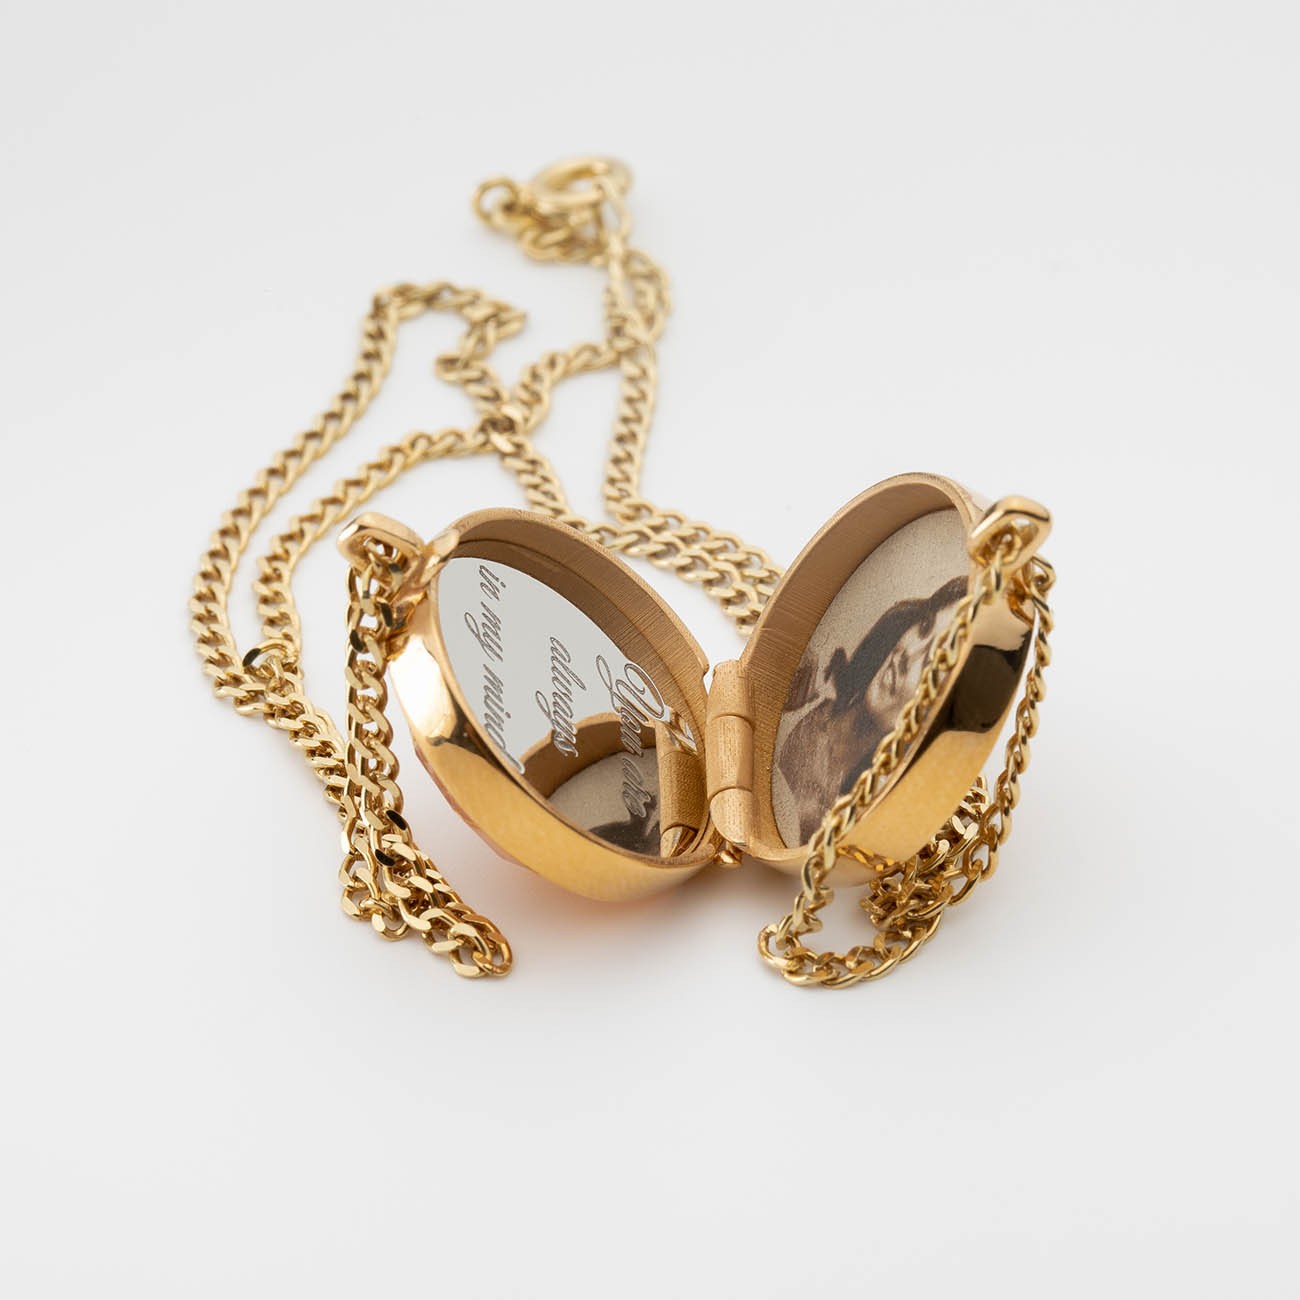 Halskette mit Medaillon-Anhänger, graviert & foto, weiße kristalle, sterlingsilber 925